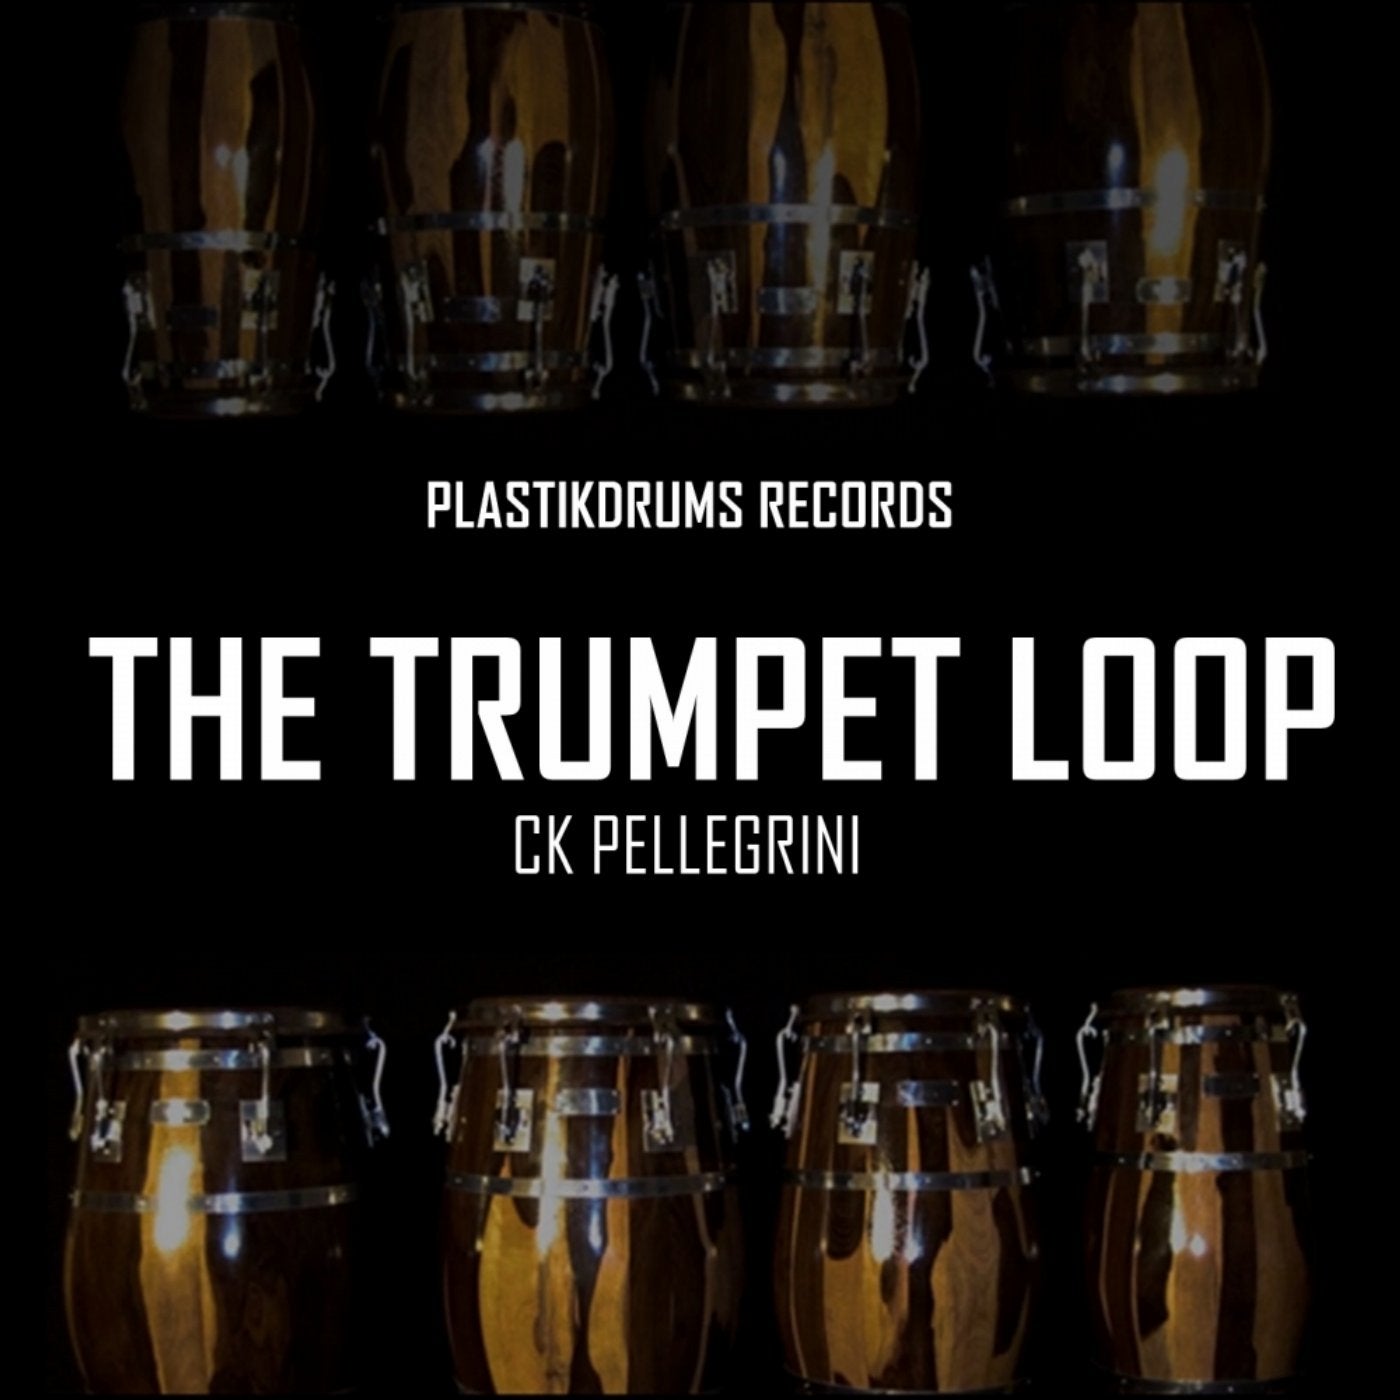 The Trumpet Loop